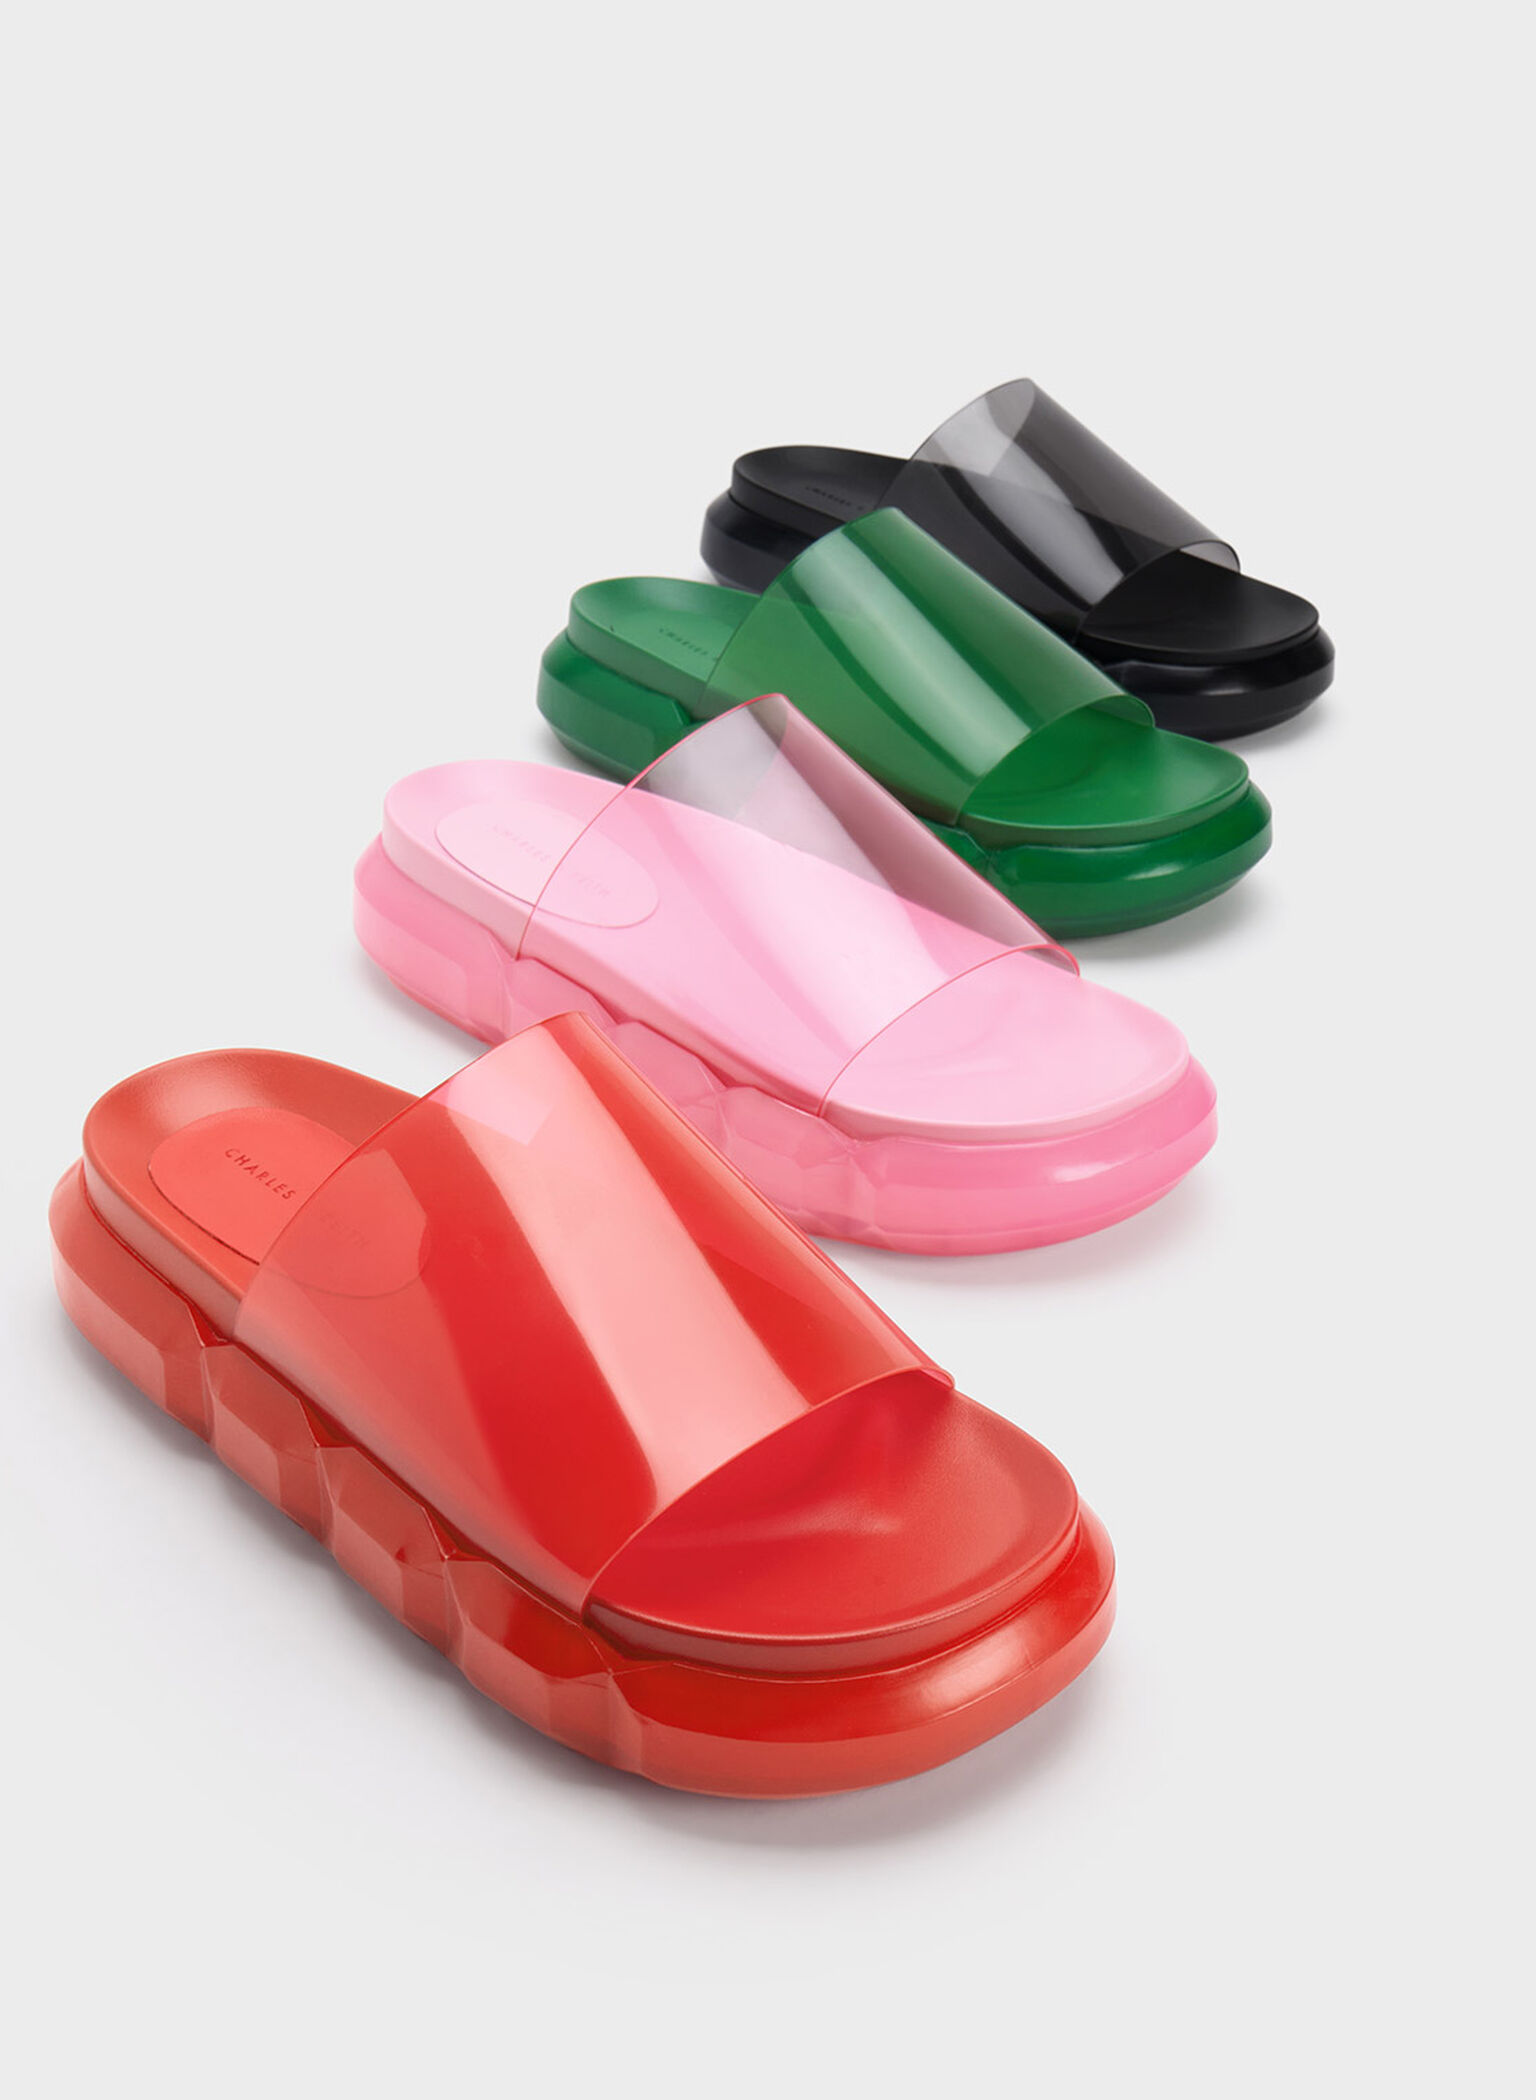 Fia See-Through Slide Sandals, Red, hi-res